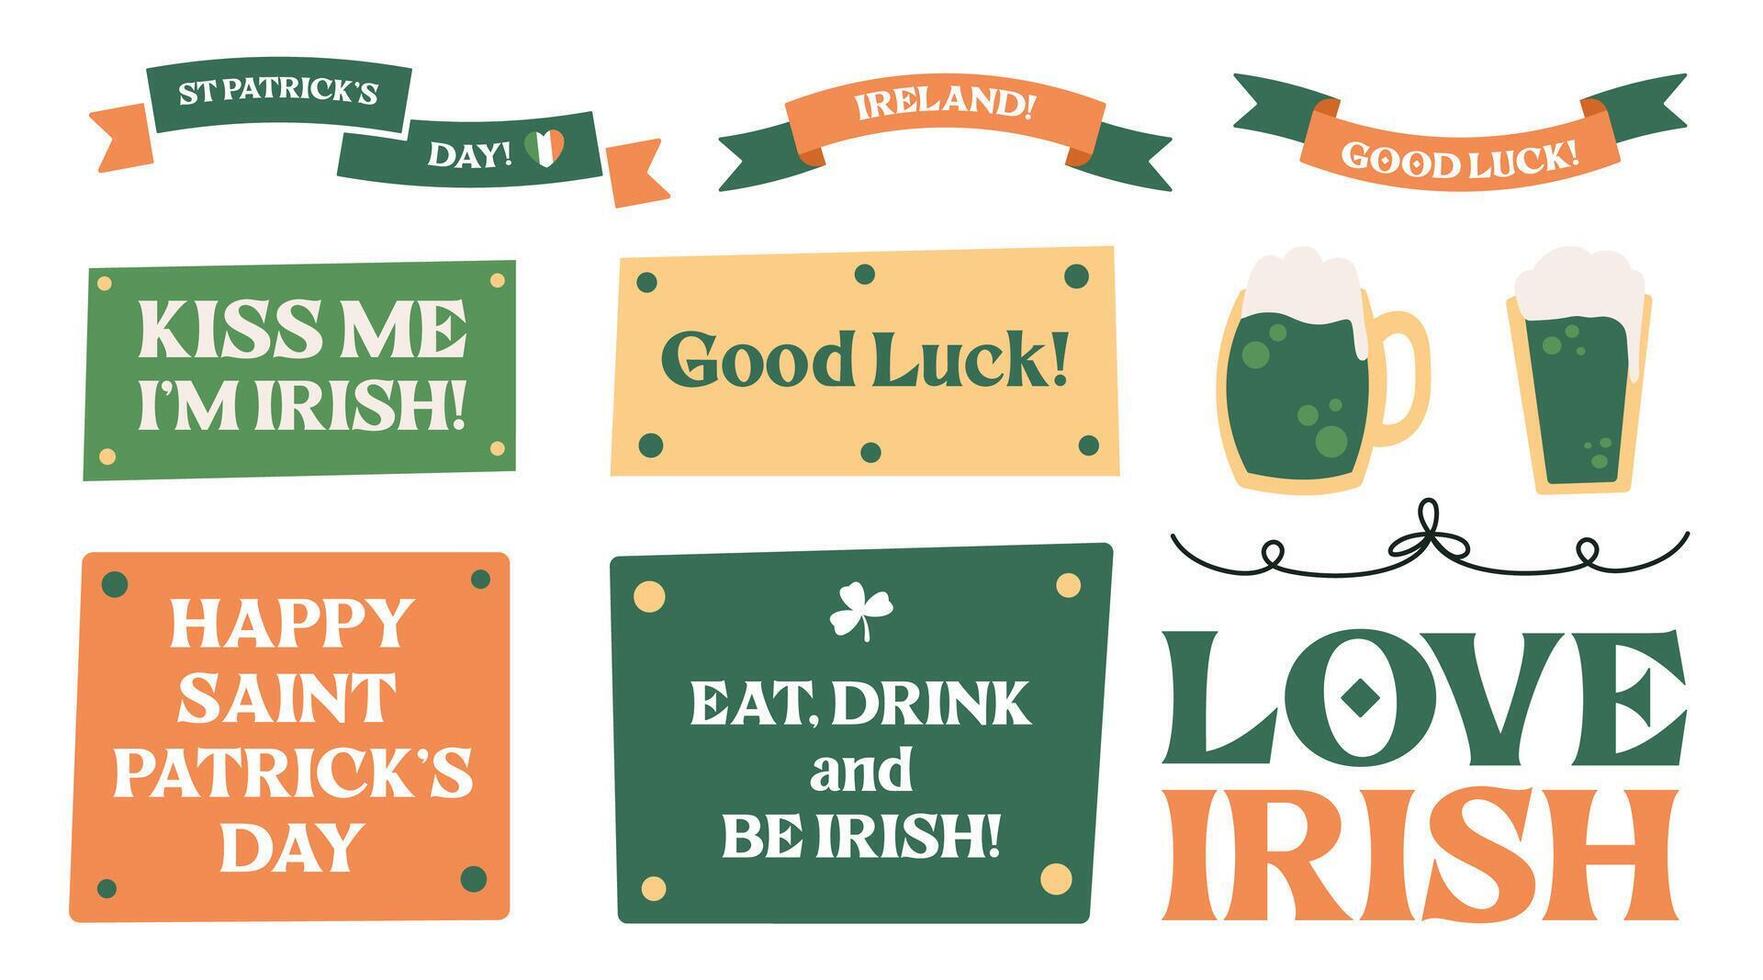 Santo patrick's día pegatina colocar, irlandesa fiesta diseño elementos con irlandesa banderas, bandera decoraciones, verde cerveza, sombreros, habla burbujas, herradura y duende oro. vector ilustración.